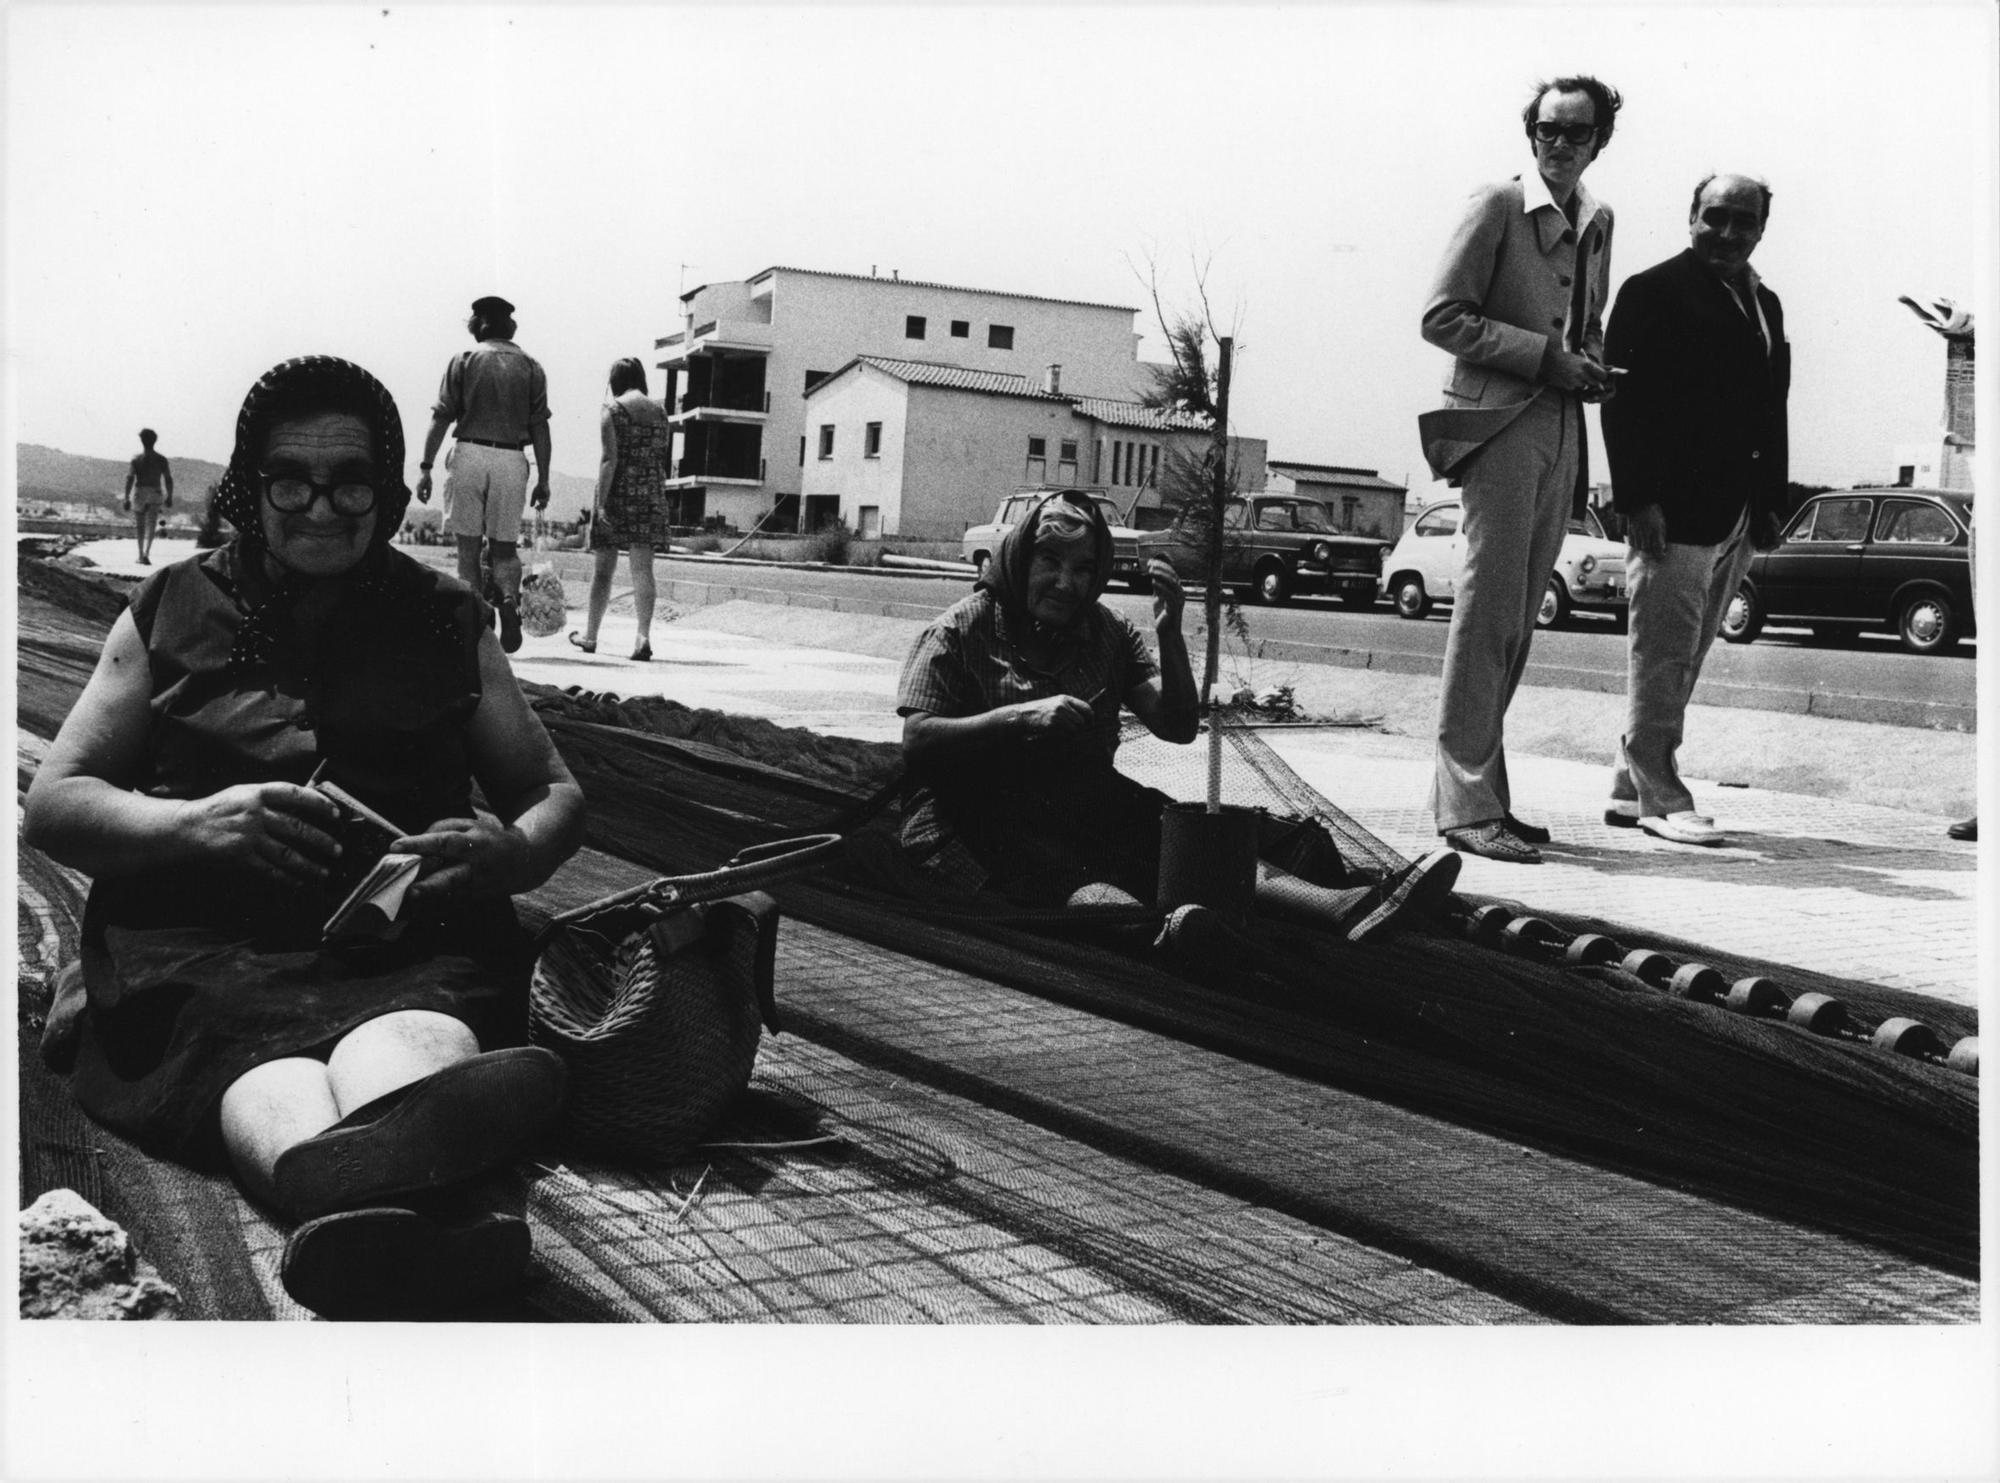 Dones sargint xarxes a l'Escala, 1977